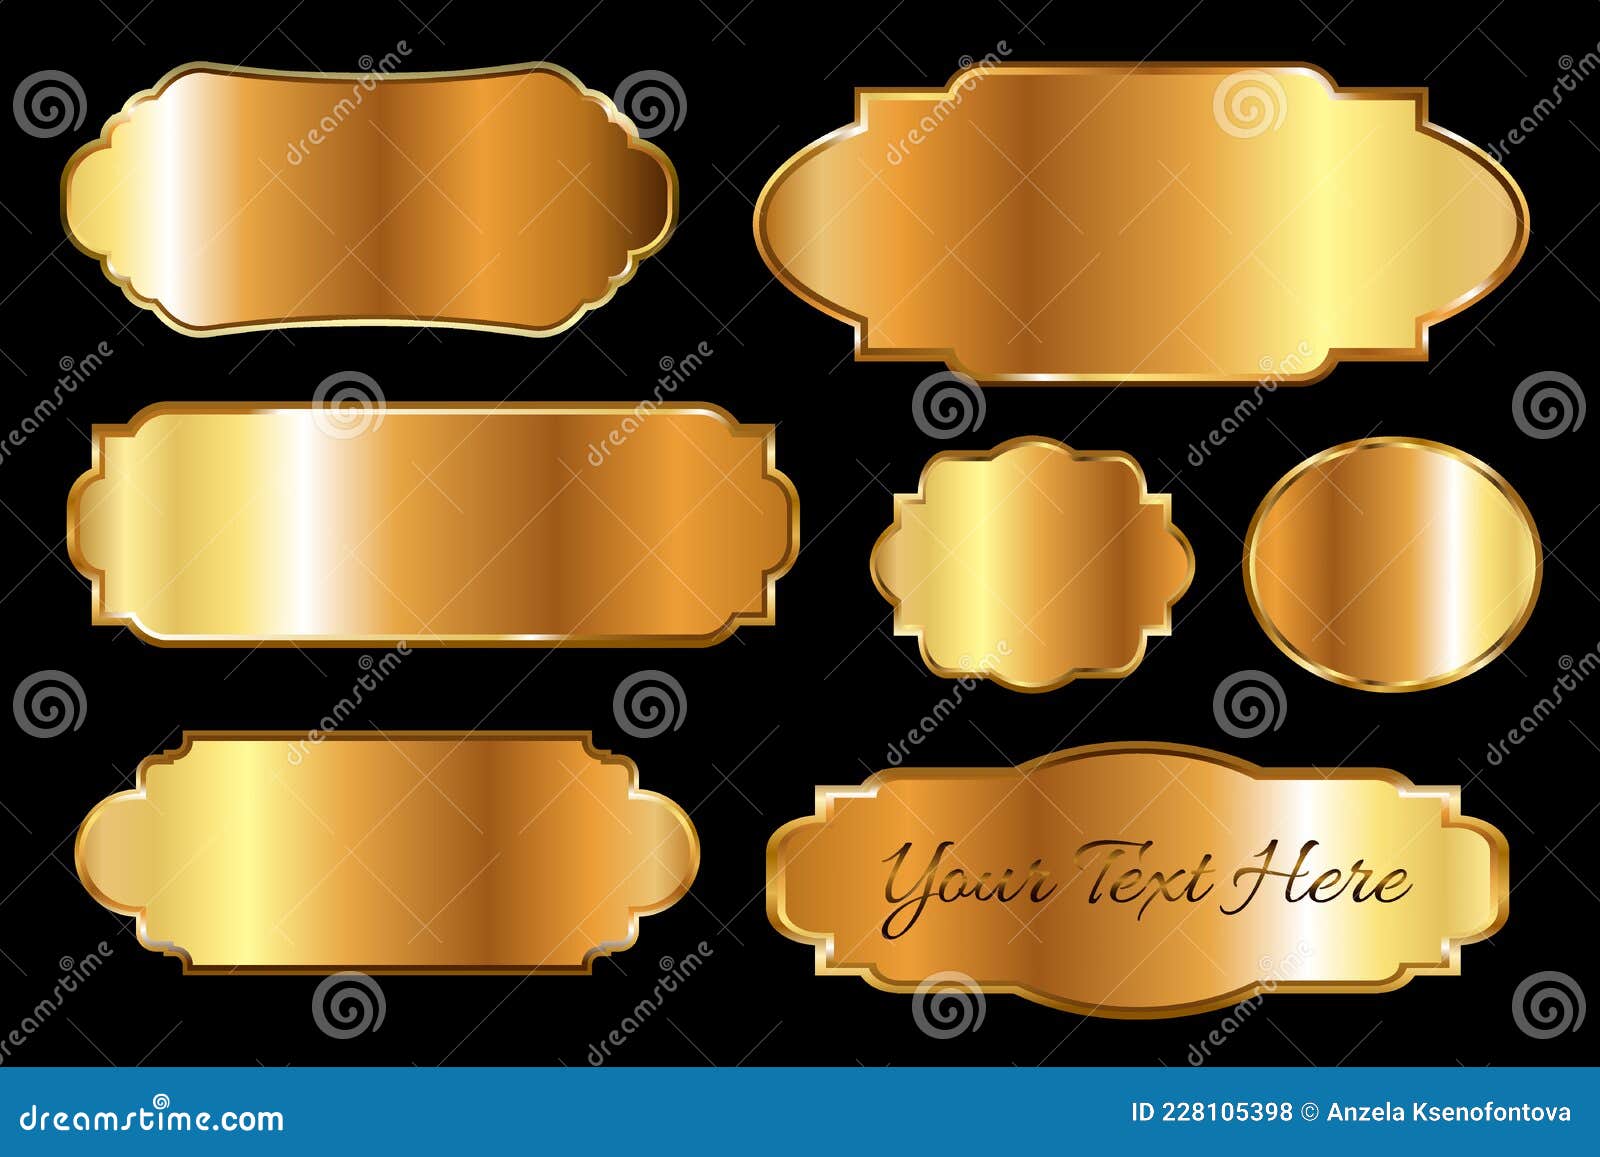 Signe d'insigne de luxe d'étiquette dorée brillante de qualité exclusive  sur fond blanc. Peut être utilisé comme meilleur choix, prix, édition  limitée, à vendre et autre logo d'autocollant d'entreprise. illustration  vectorielle 4562219